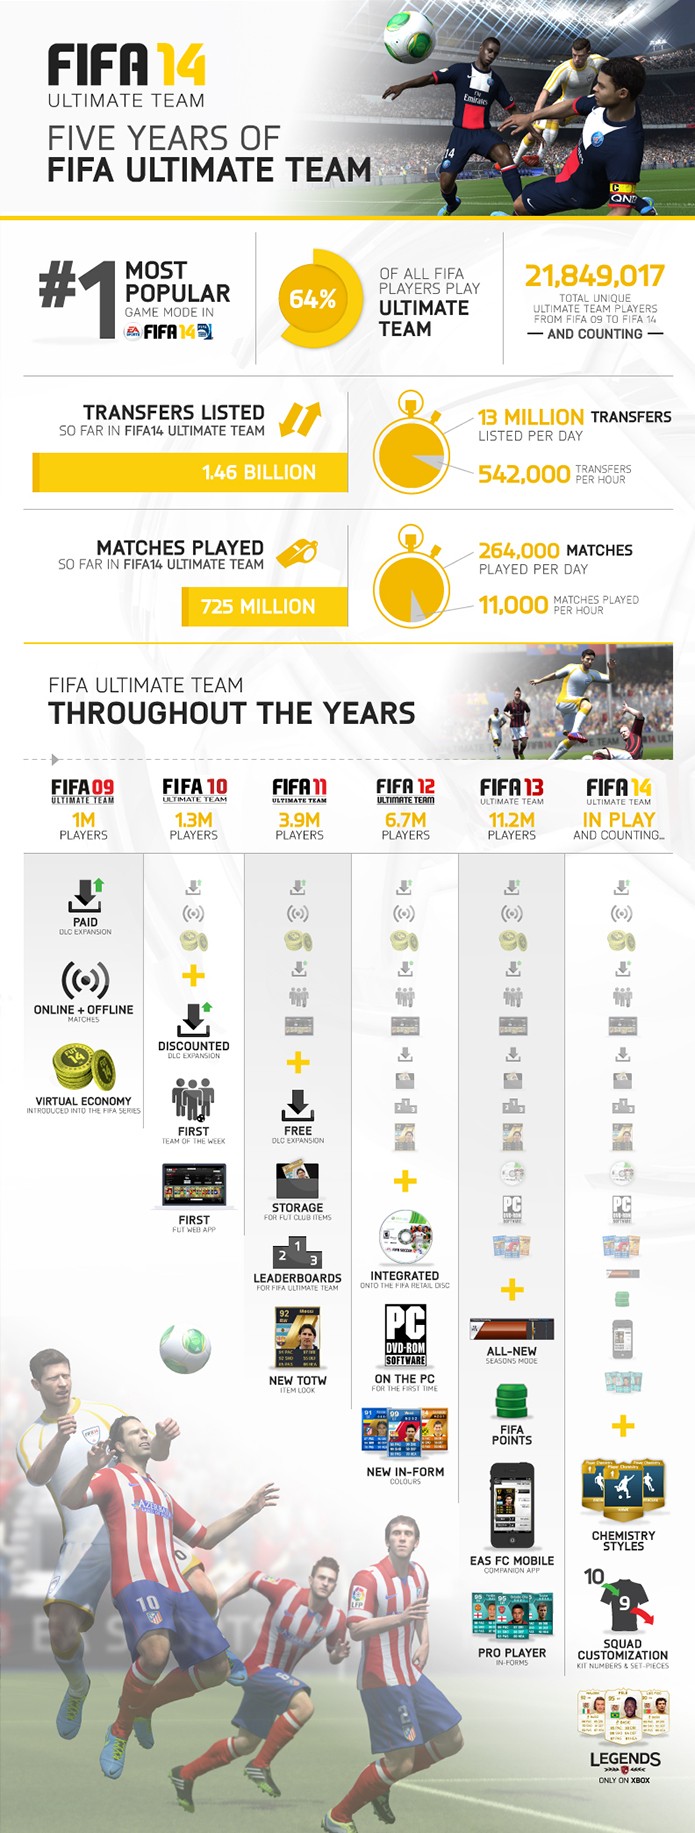 Infográfico mostra dados interessantes sobre os cinco anos de FUT (Foto: Divulgação)